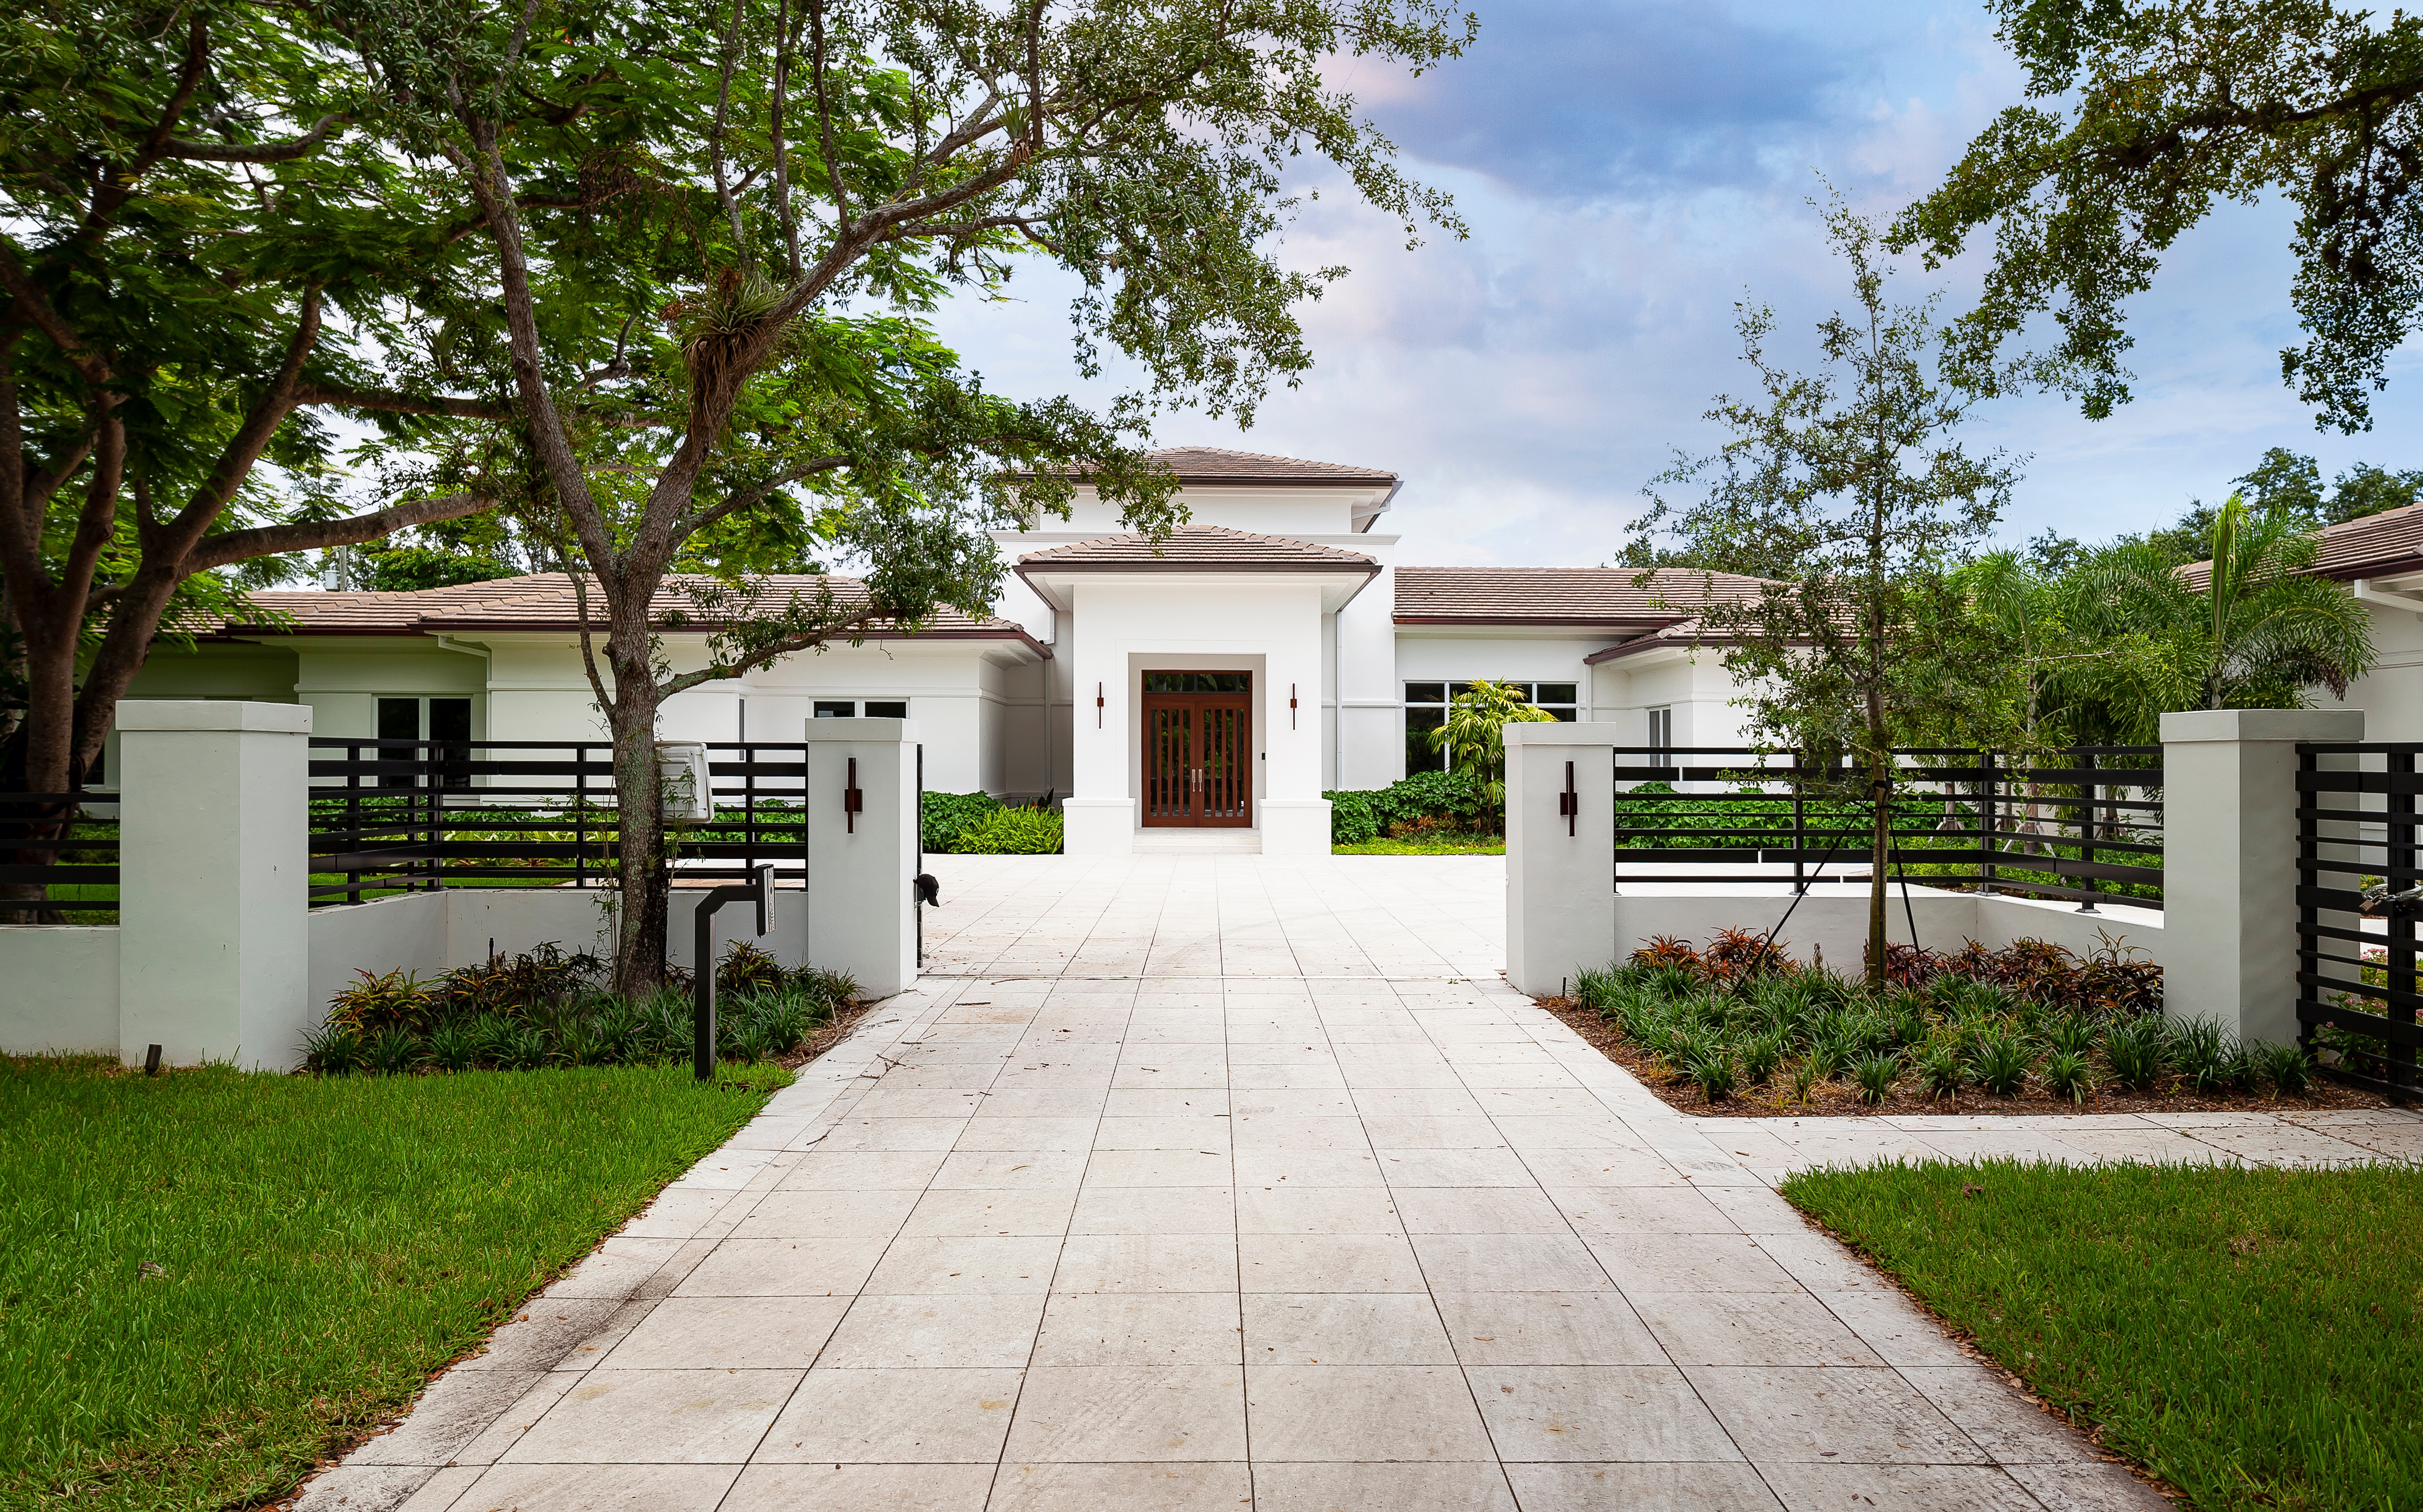 A big beautiful house | Source: Shutterstock